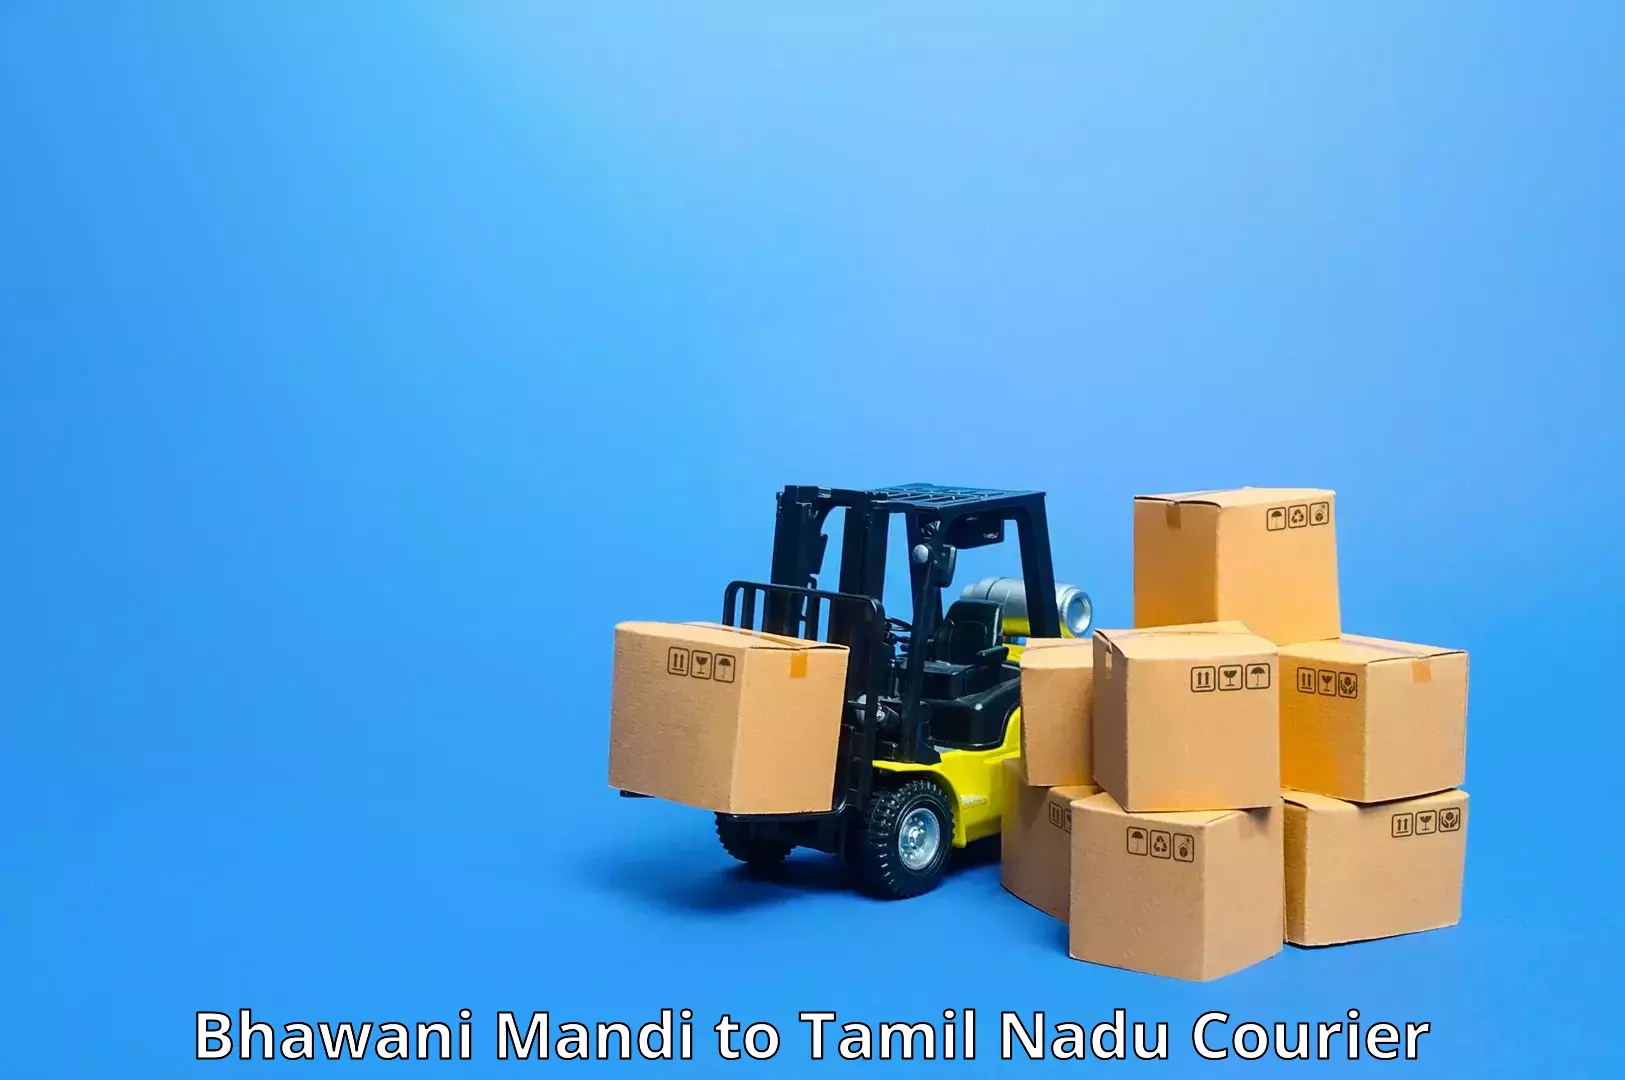 Logistics service provider Bhawani Mandi to Arani